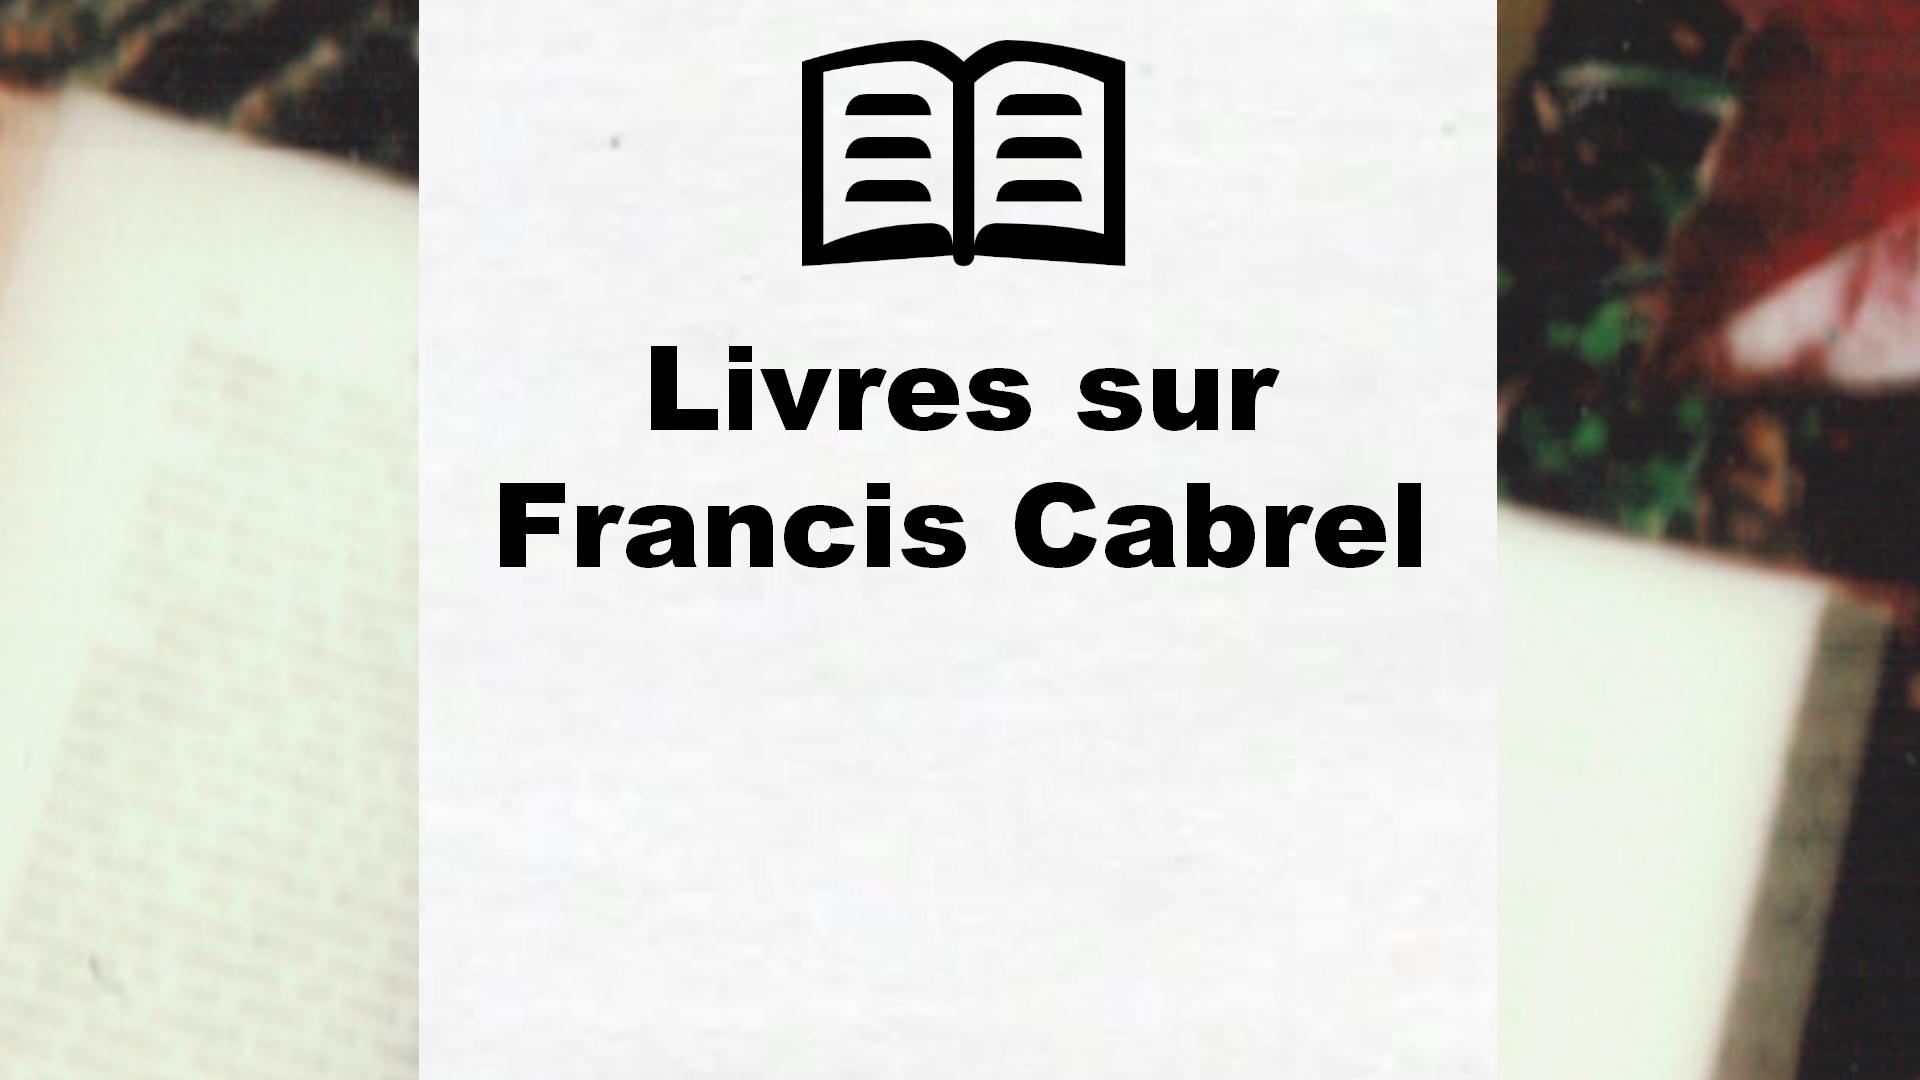 Livres sur Francis Cabrel